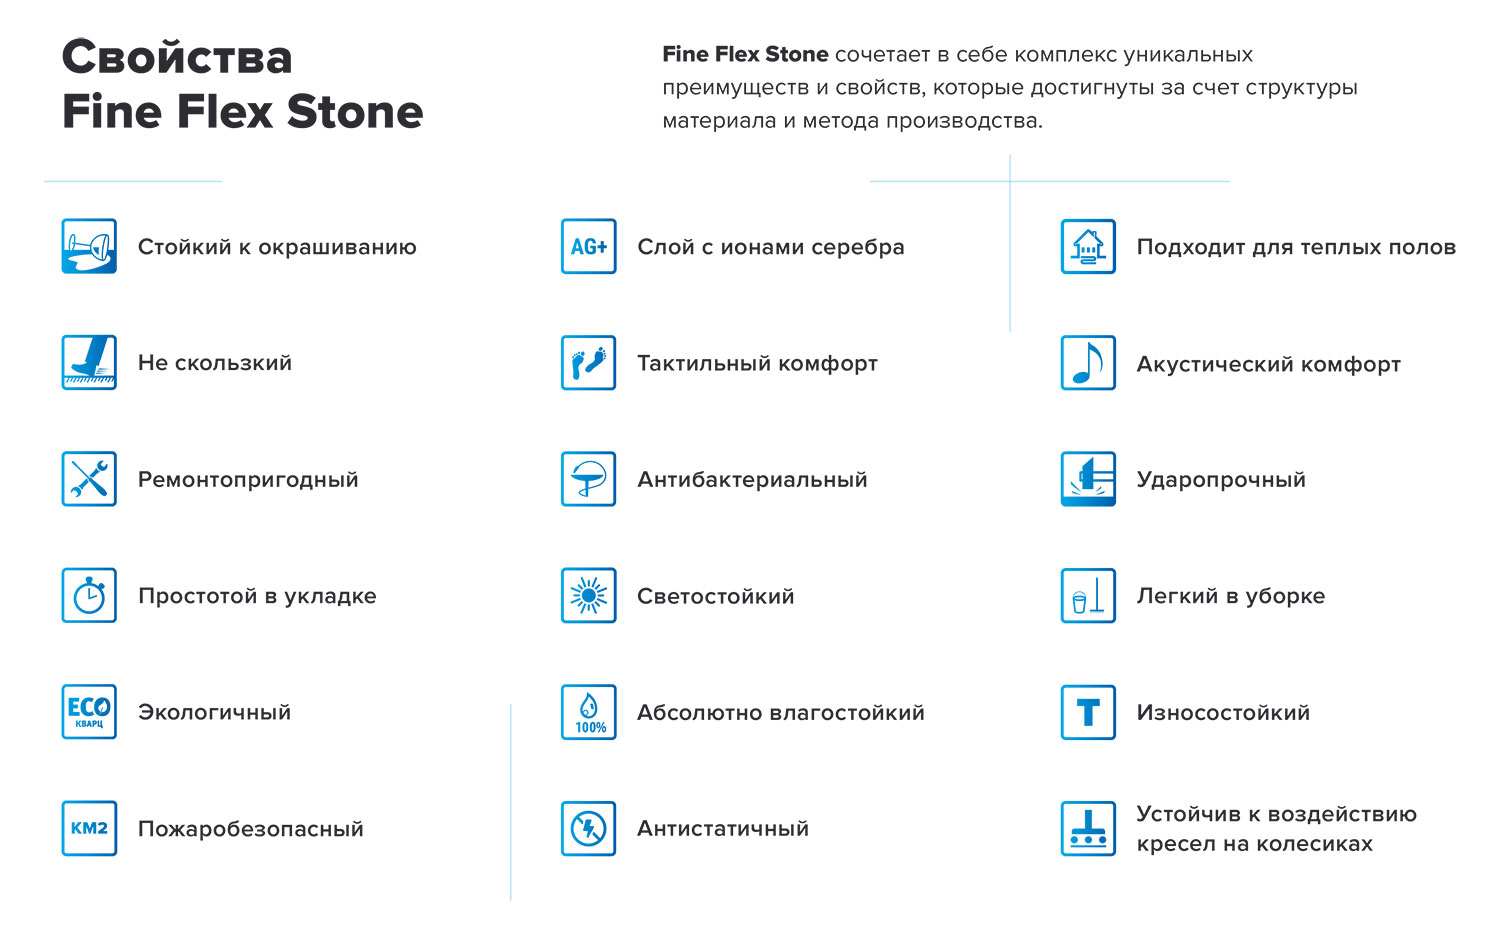 Технические характеристики FineFlex Stone